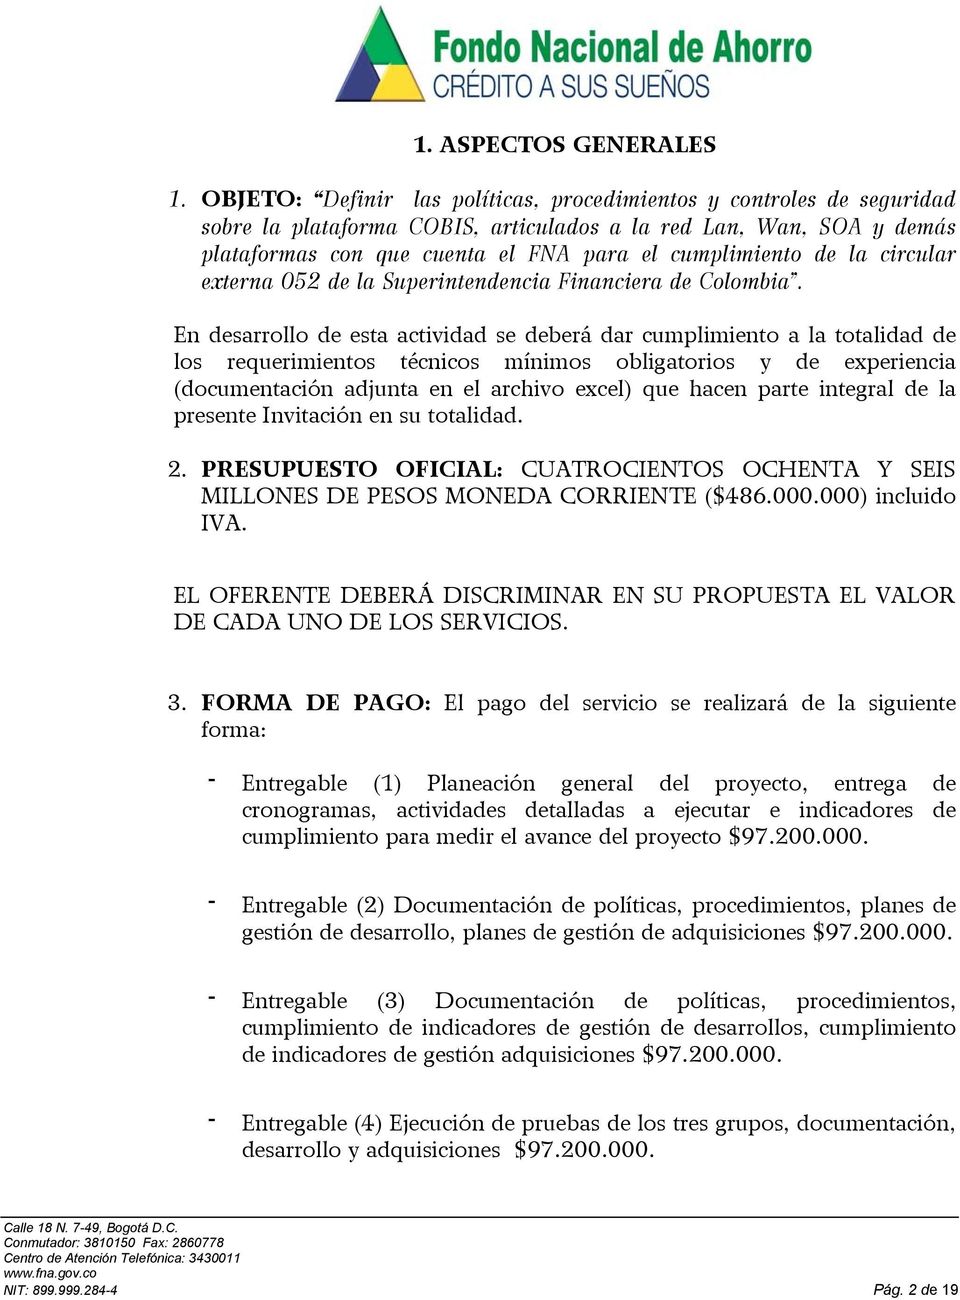 la circular externa 052 de la Superintendencia Financiera de Colombia.